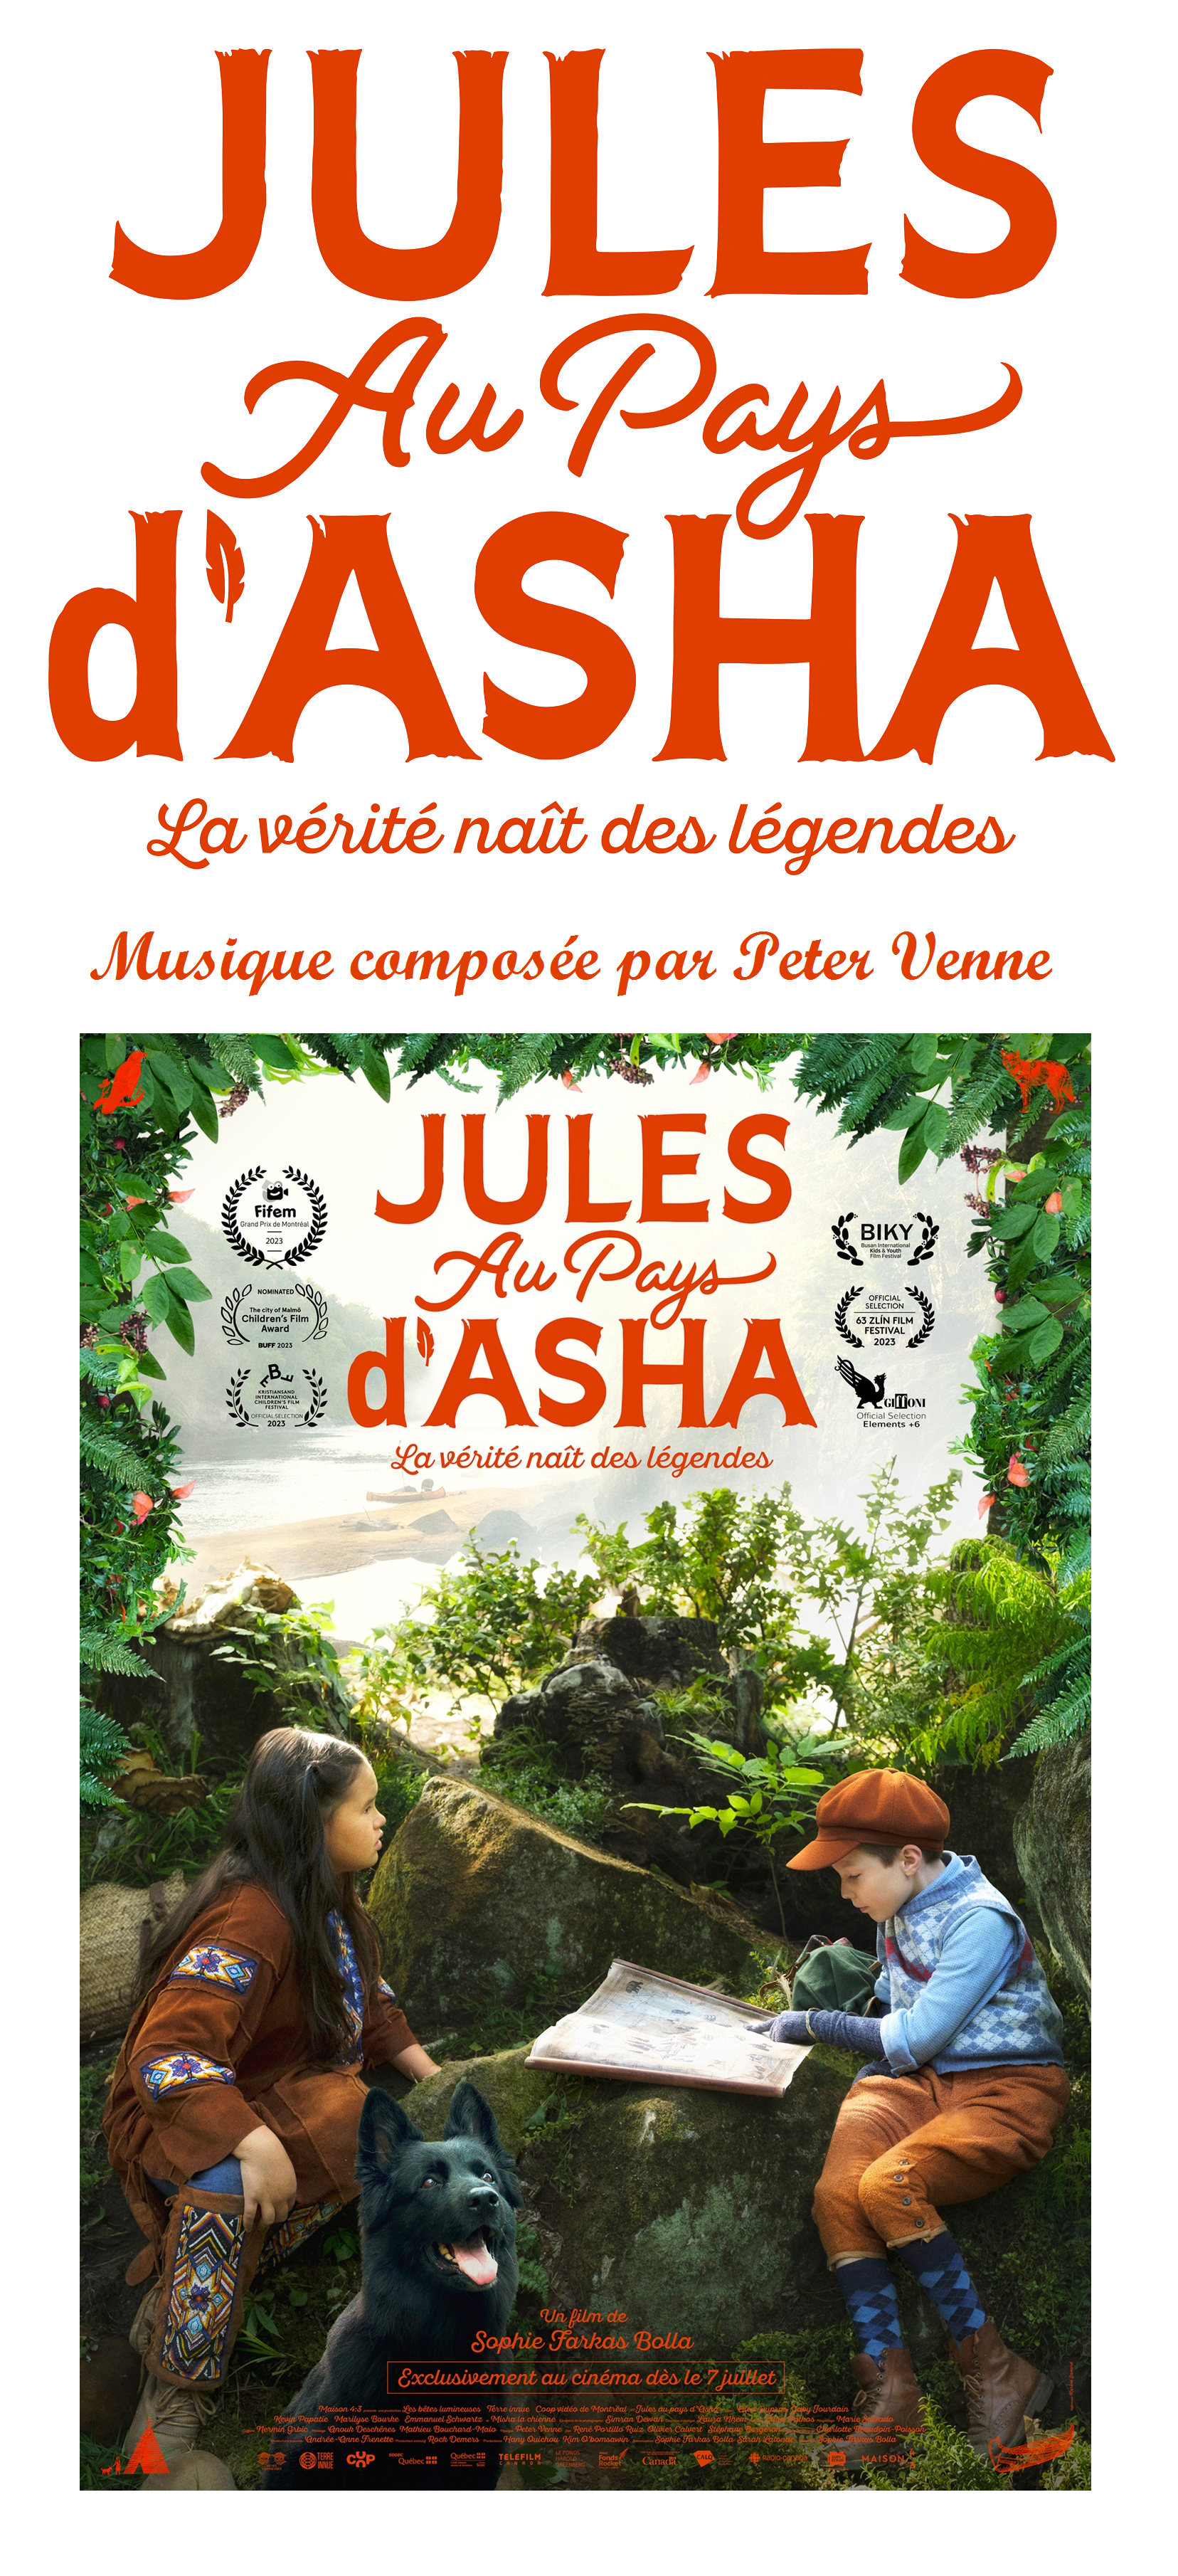 Adventures in the Land of Asha (Jules au pays dAsha)